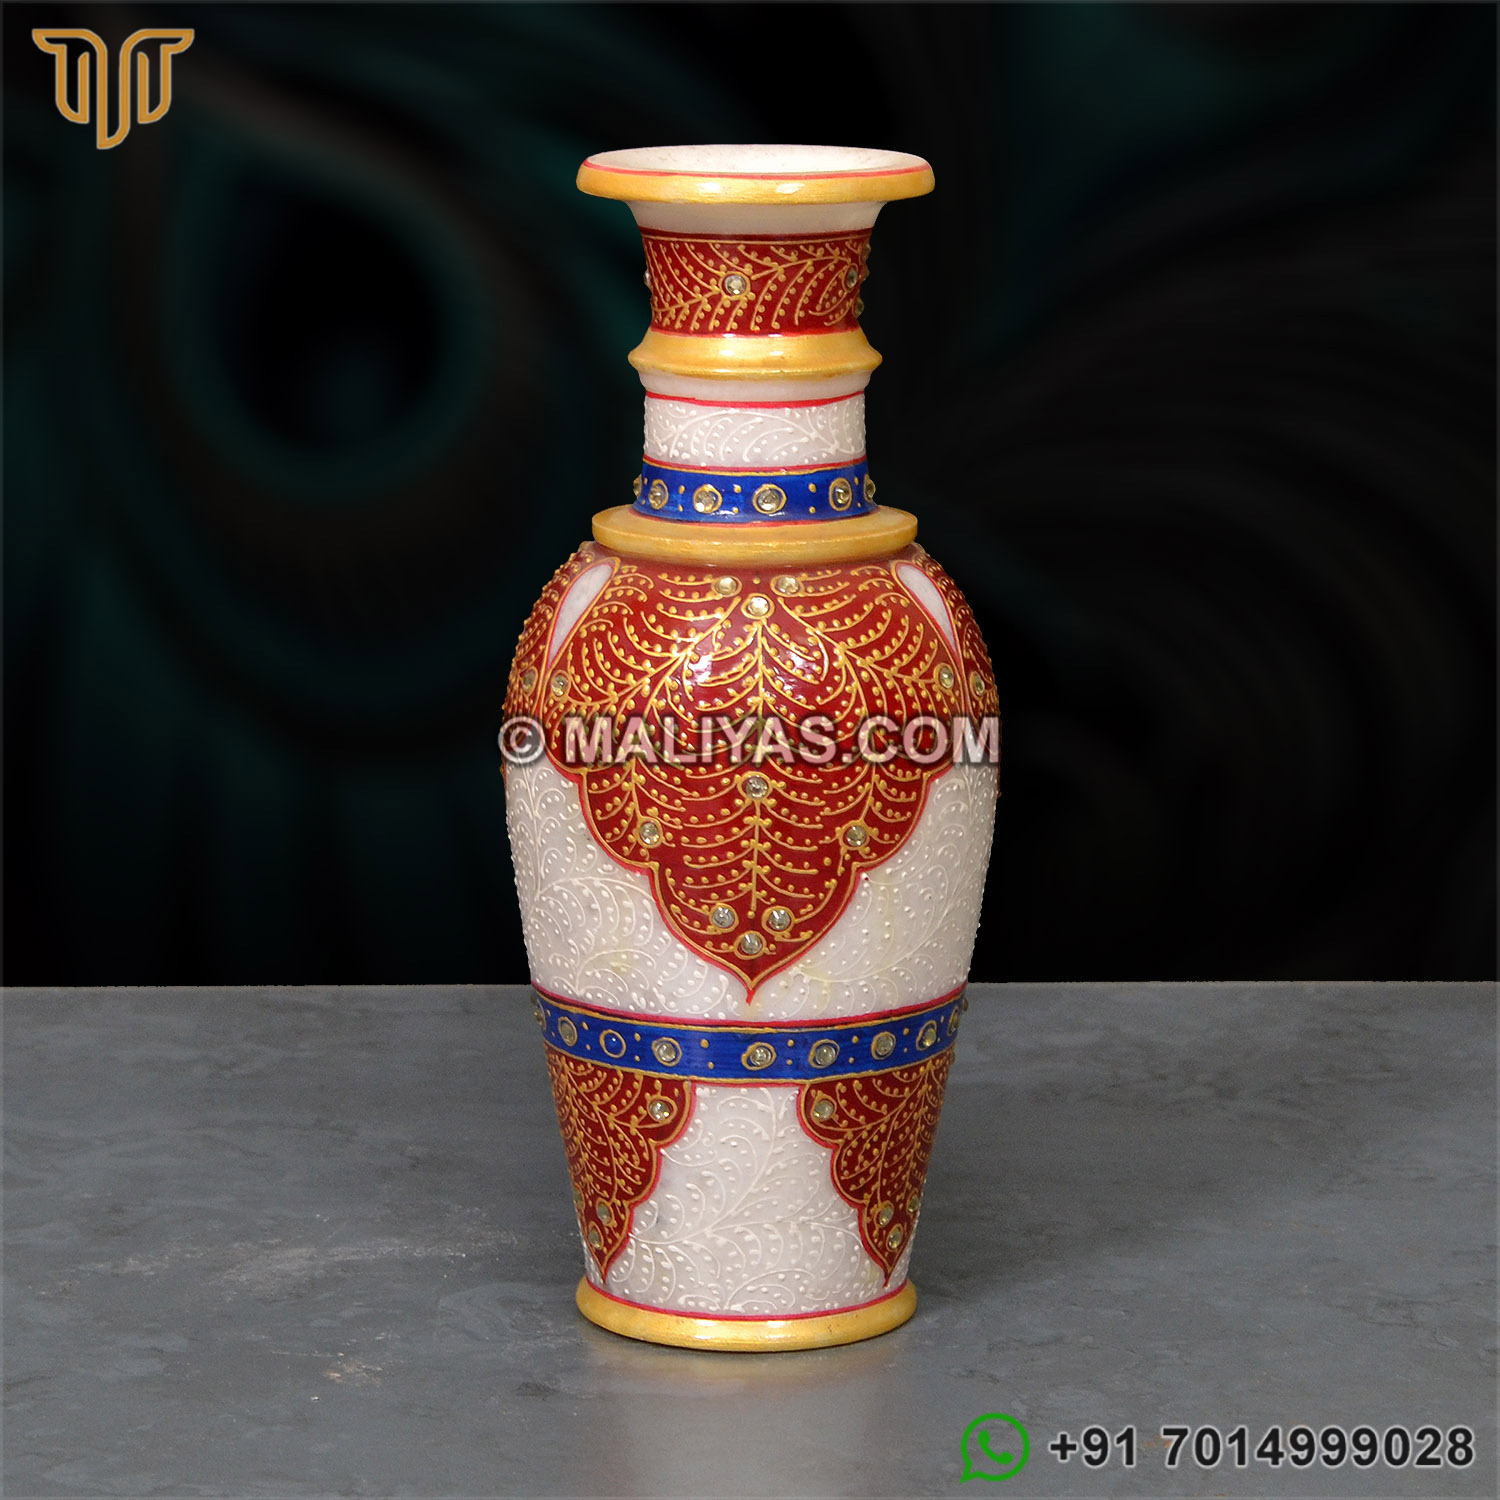 Unique Marble Vase